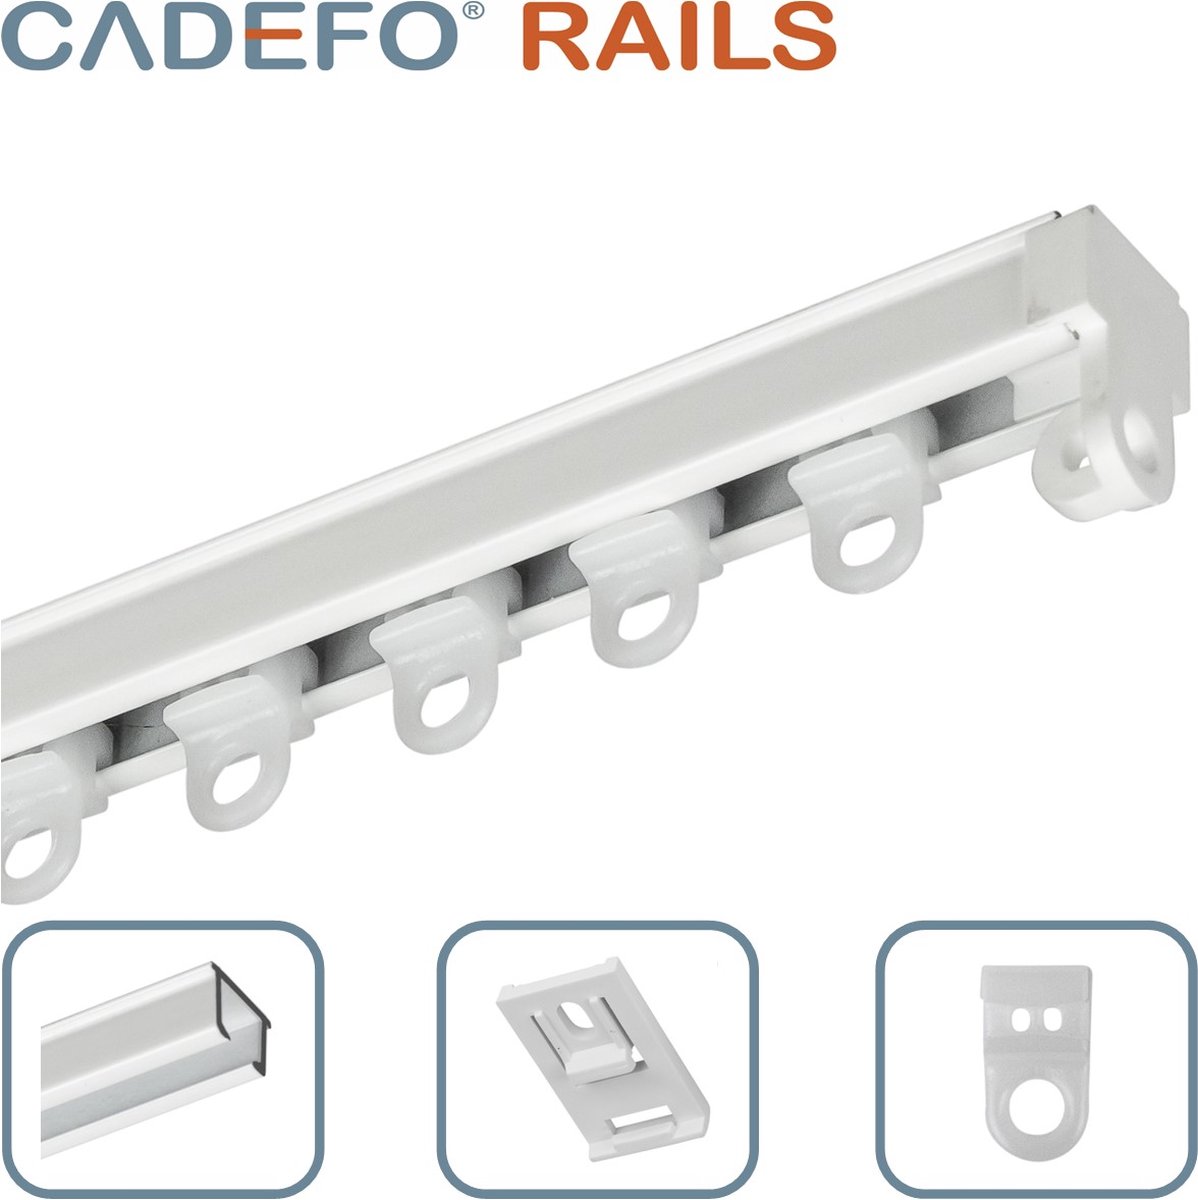 CADEFO RAILS (080 - 100 cm) Gordijnrails - Compleet op maat! - UIT 1 STUK - Leverbaar tot 6 meter - Plafondbevestiging - Lengte 93 cm